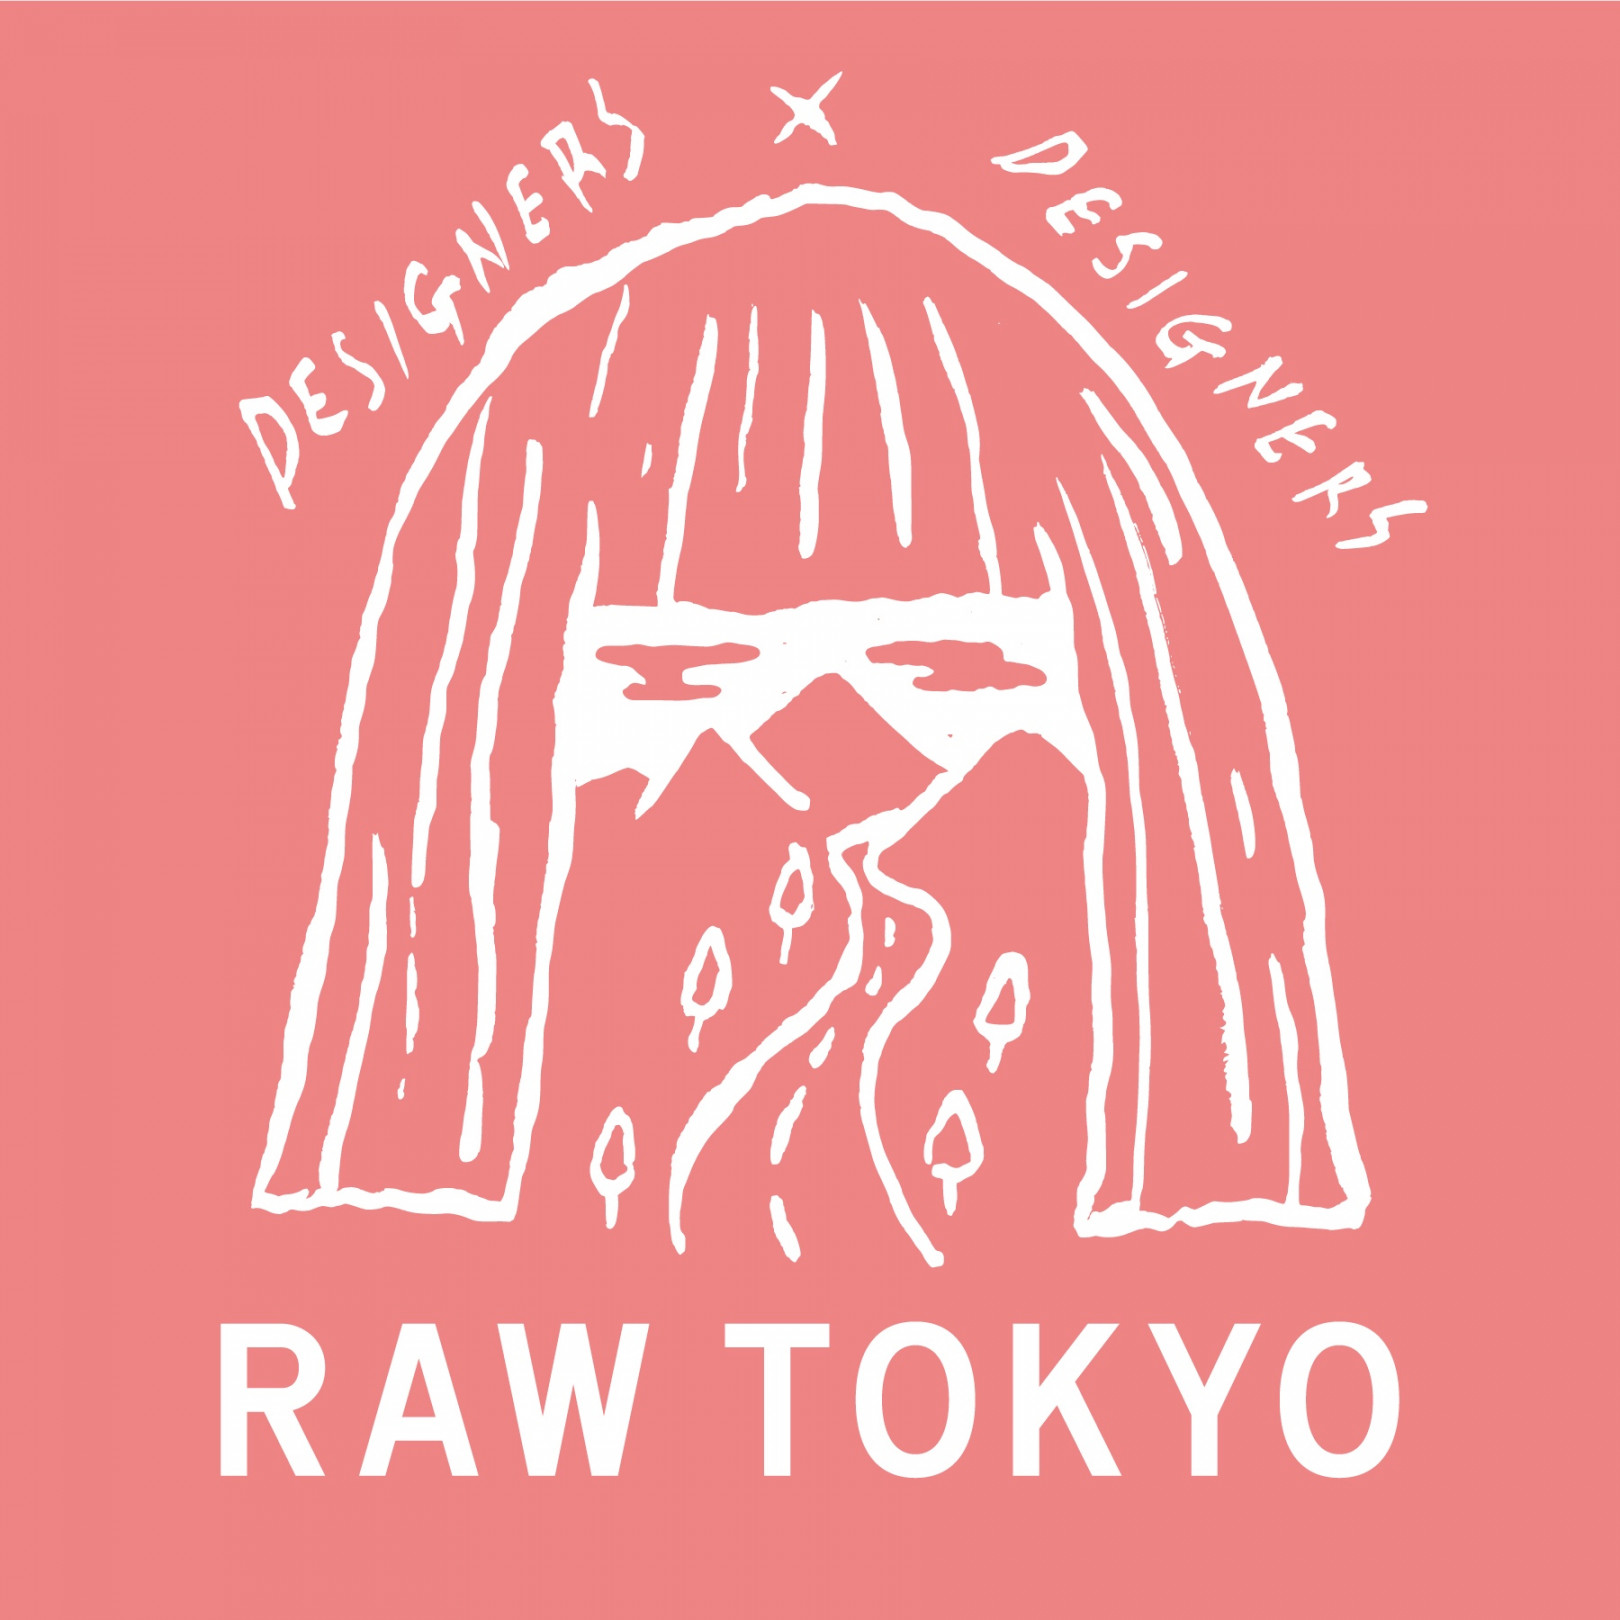 東京各地のビンテージセレクトショップが集結! 週末フリマ「RAW TOKYO」開催